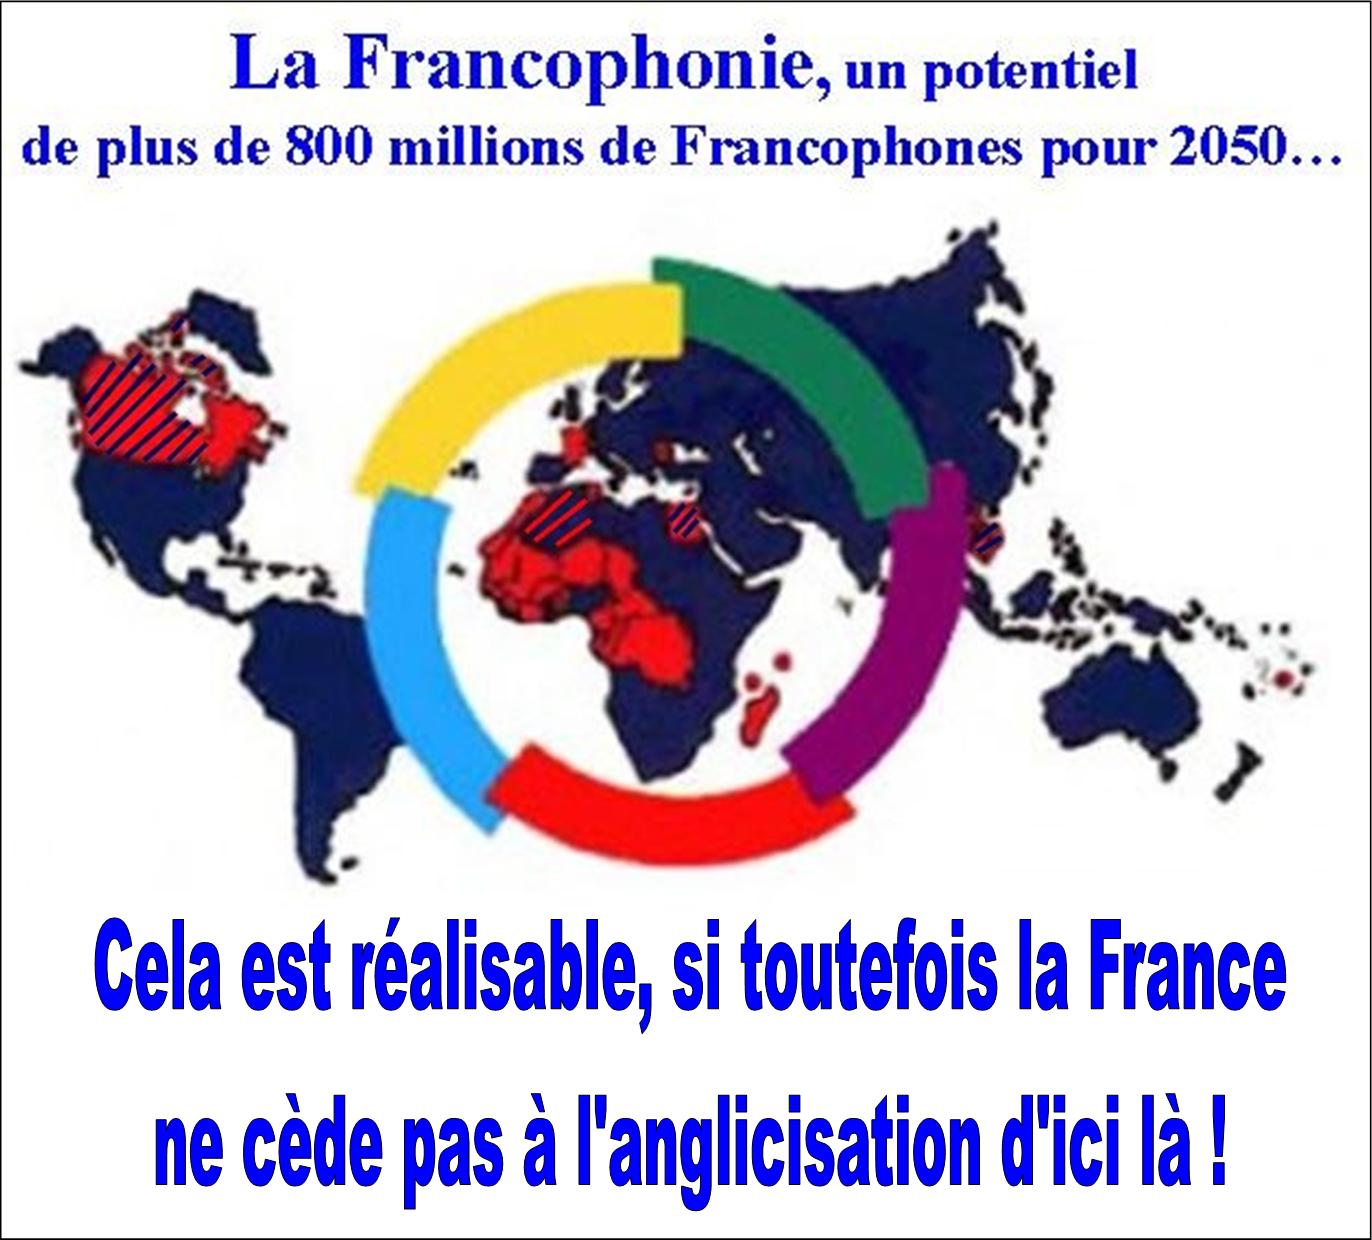 la Francophonie a un fort potentiel, mais... 